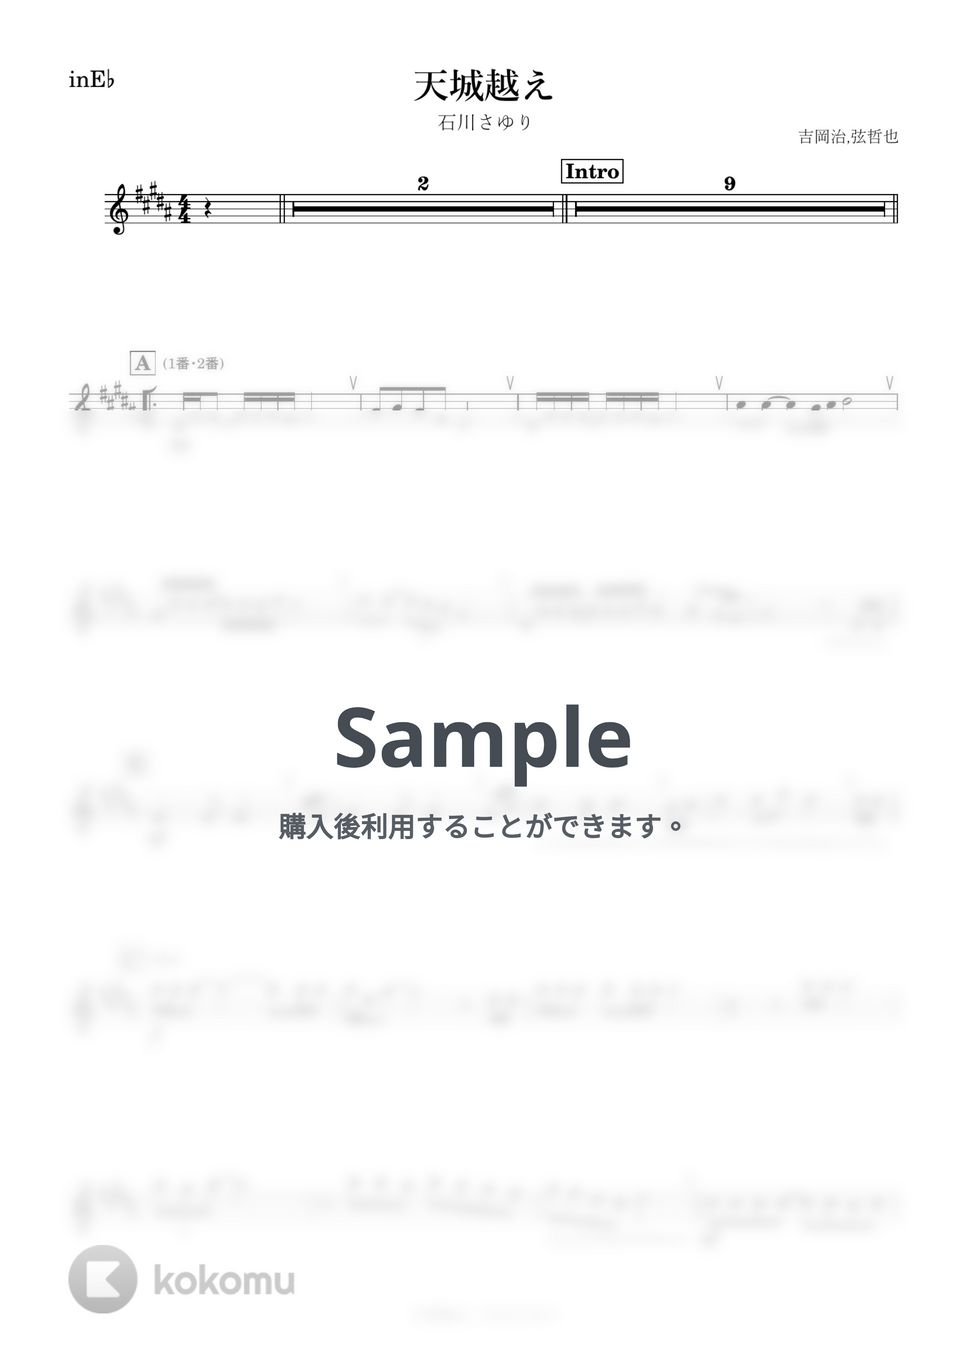 石川さゆり - 天城越え (E♭) by kanamusic